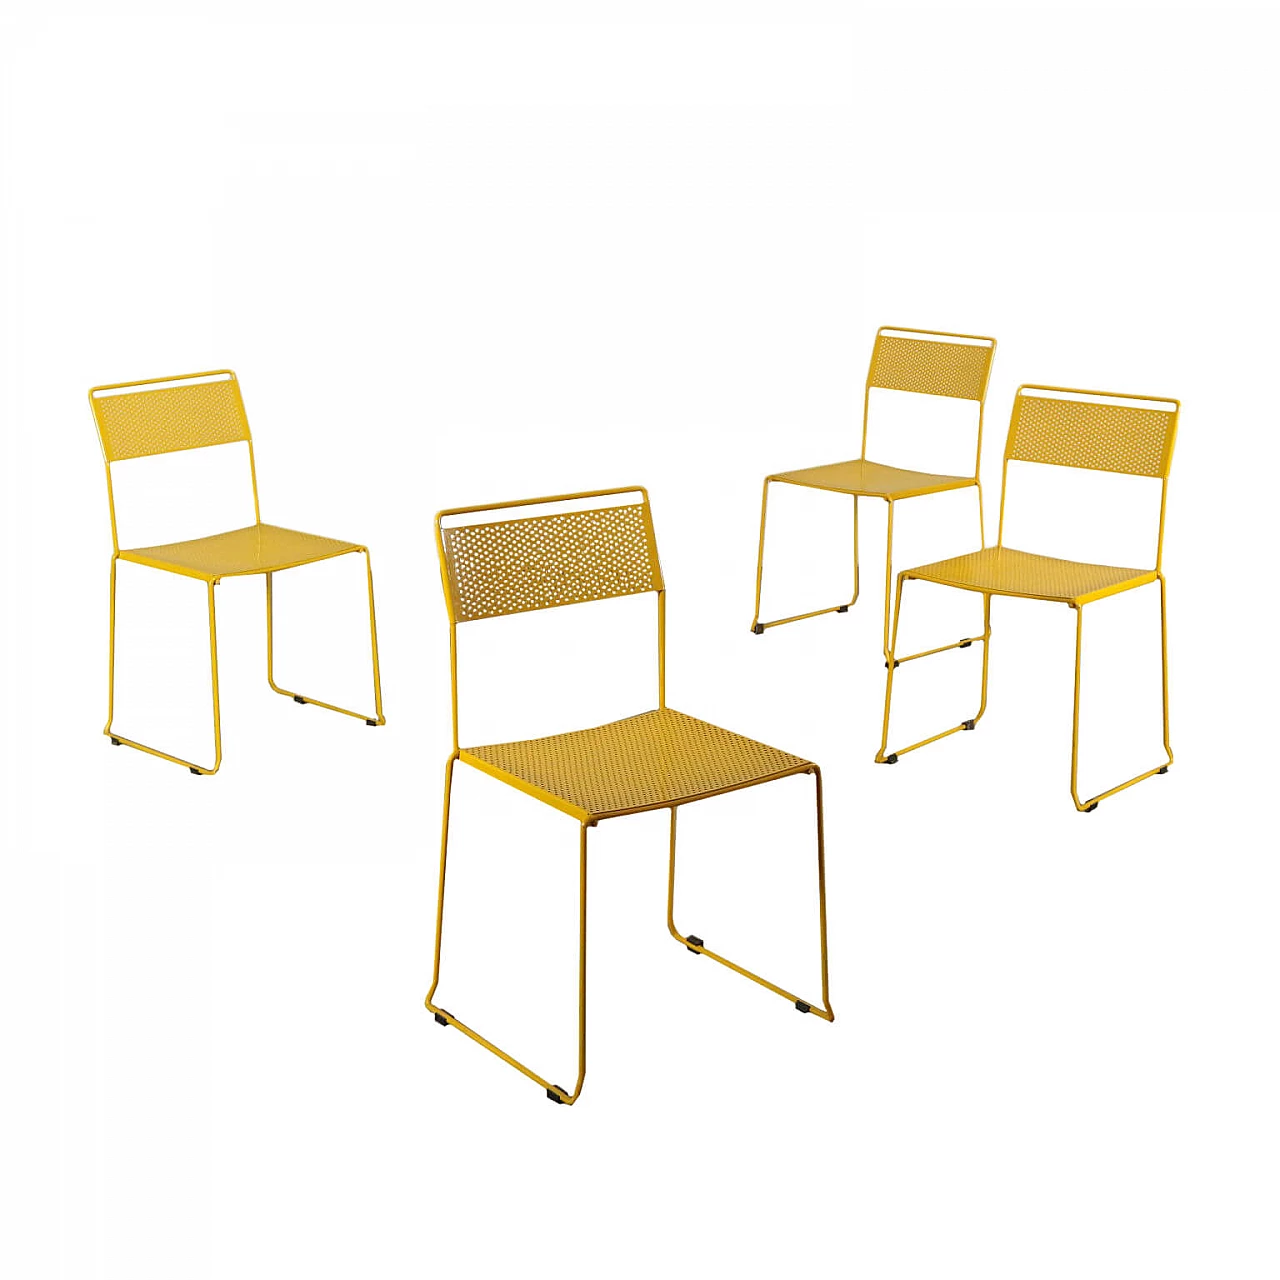 4 Chairs in enameled metal, 80s 1192081